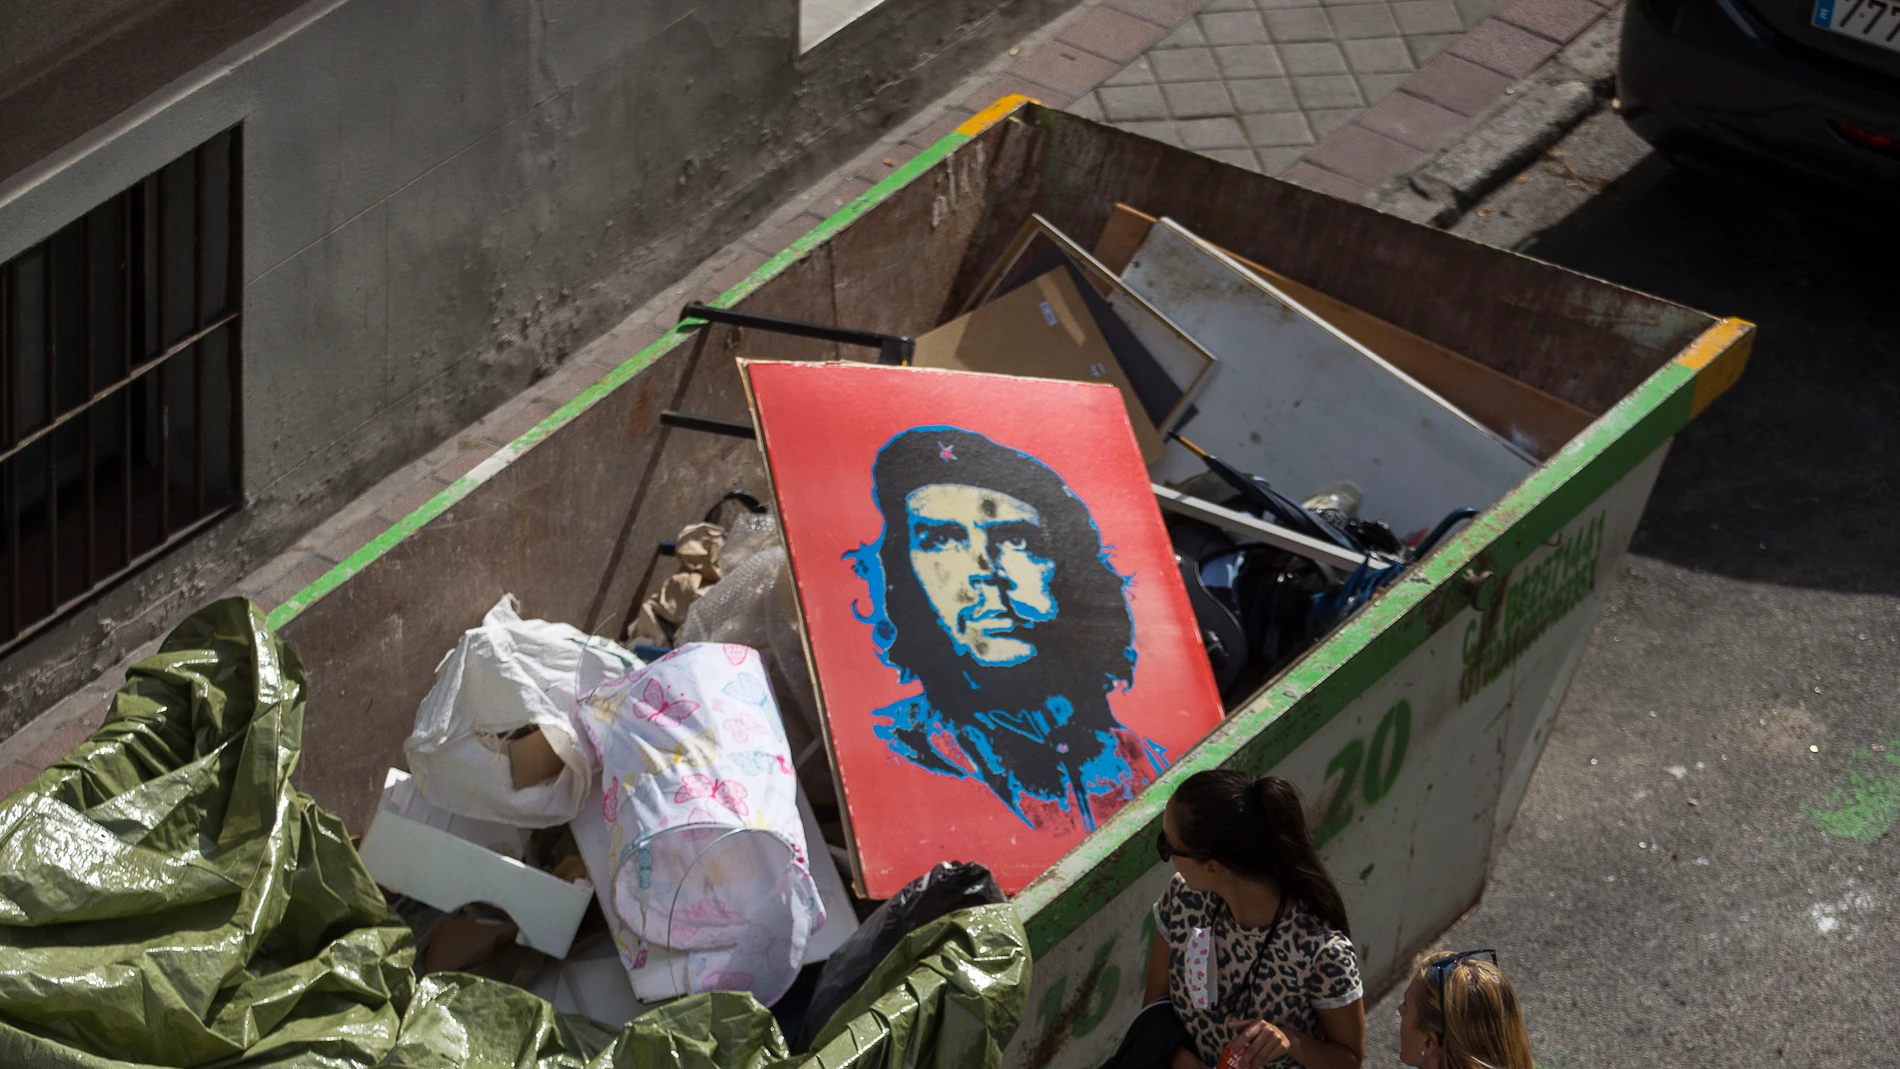 Un cuadro con la imagen del Che Guevara depositado en un contenedor de escombros y basura en una calle del centro de Madrid.